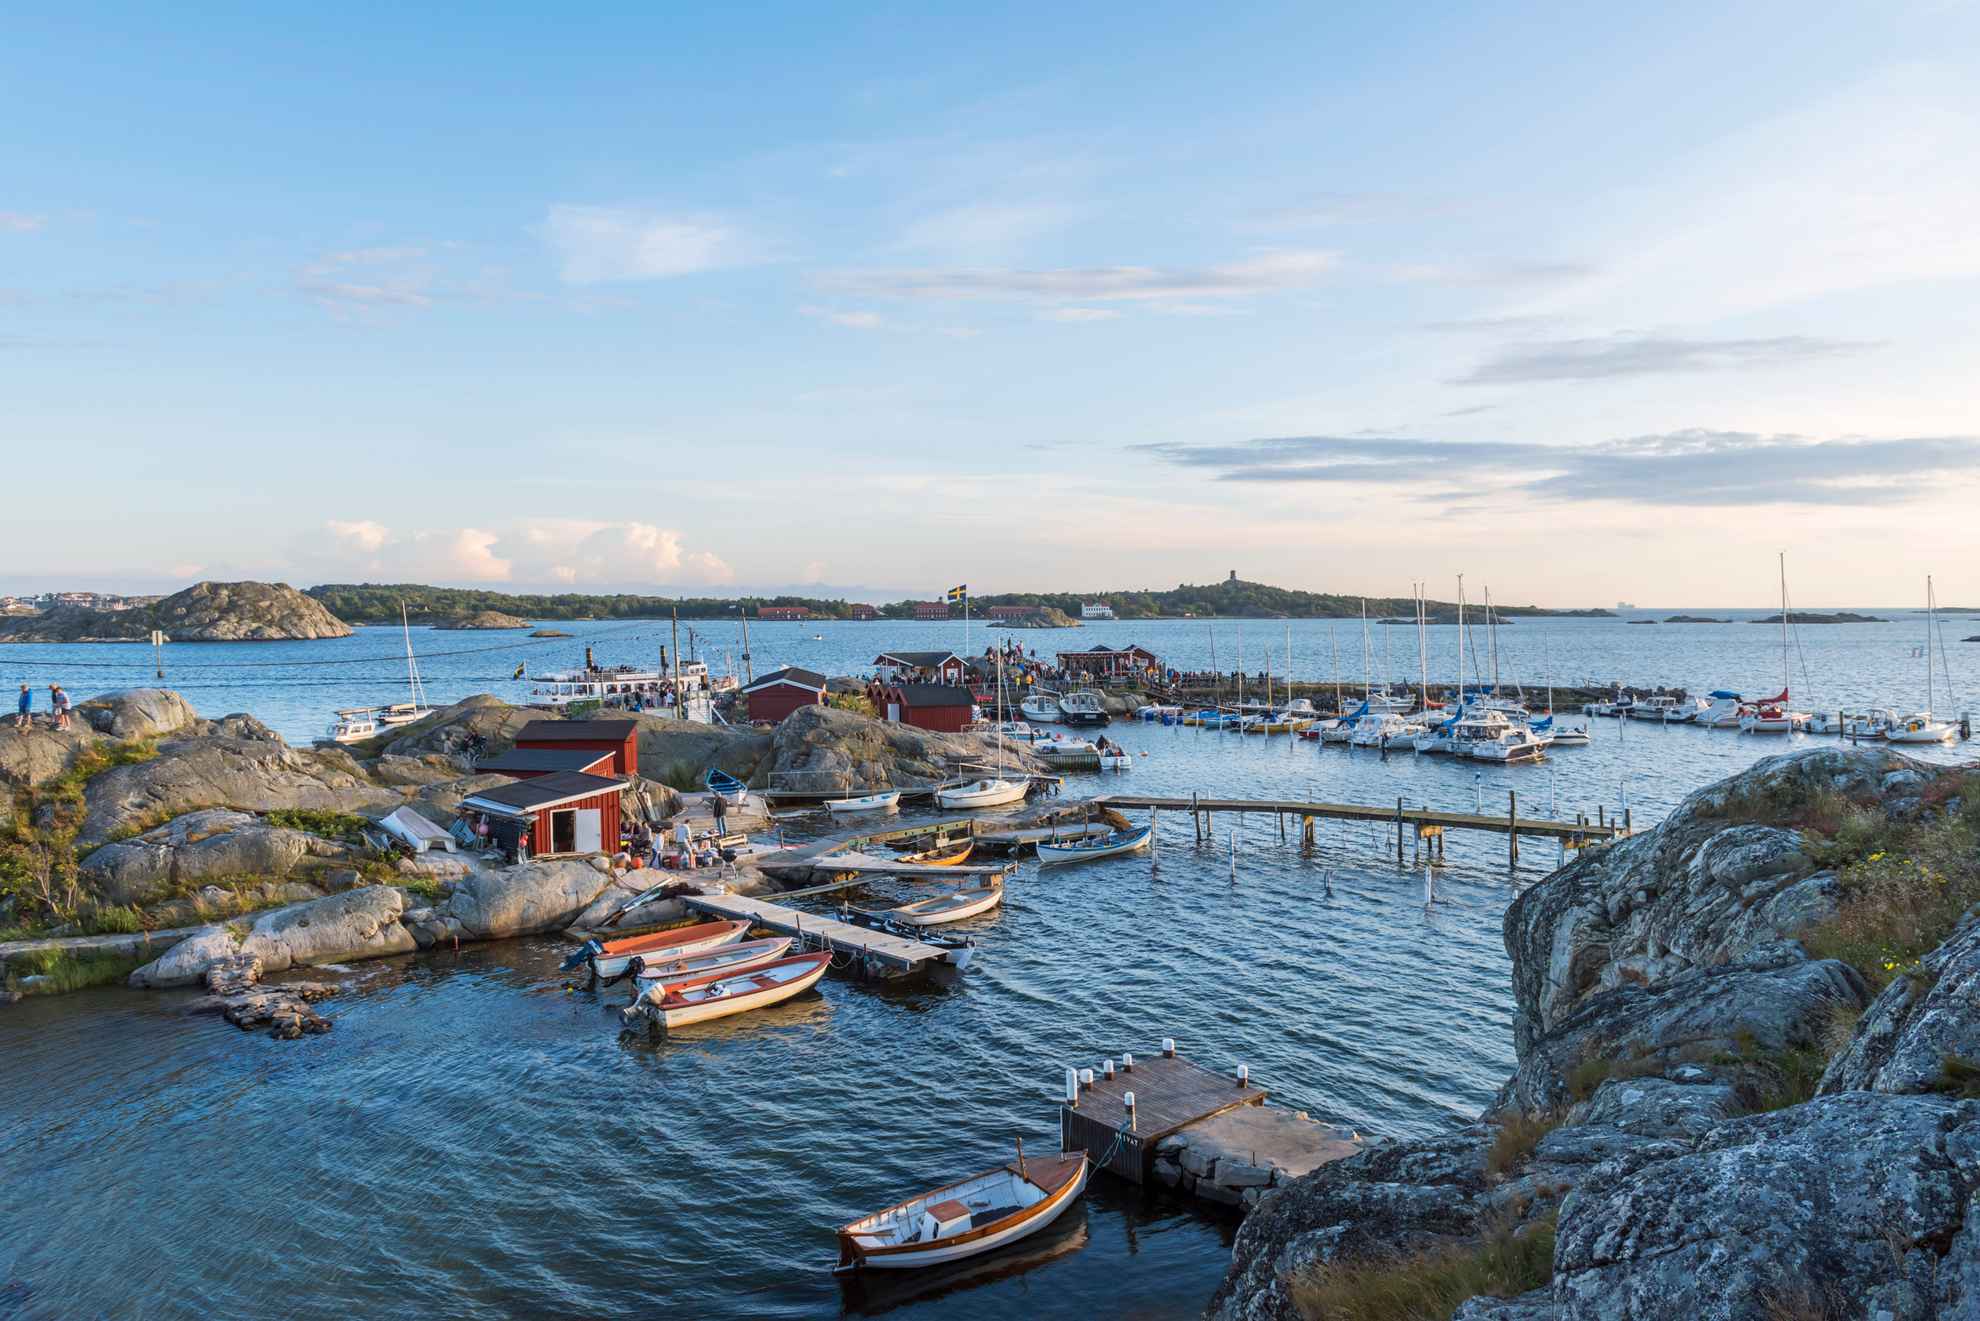 L'île de Brännö, dans l'archipel de Göteborg, avec des bateaux, des falaises rocheuses et des jetées, des petites maisons rouges, un drapeau suédois et des gens au soleil.